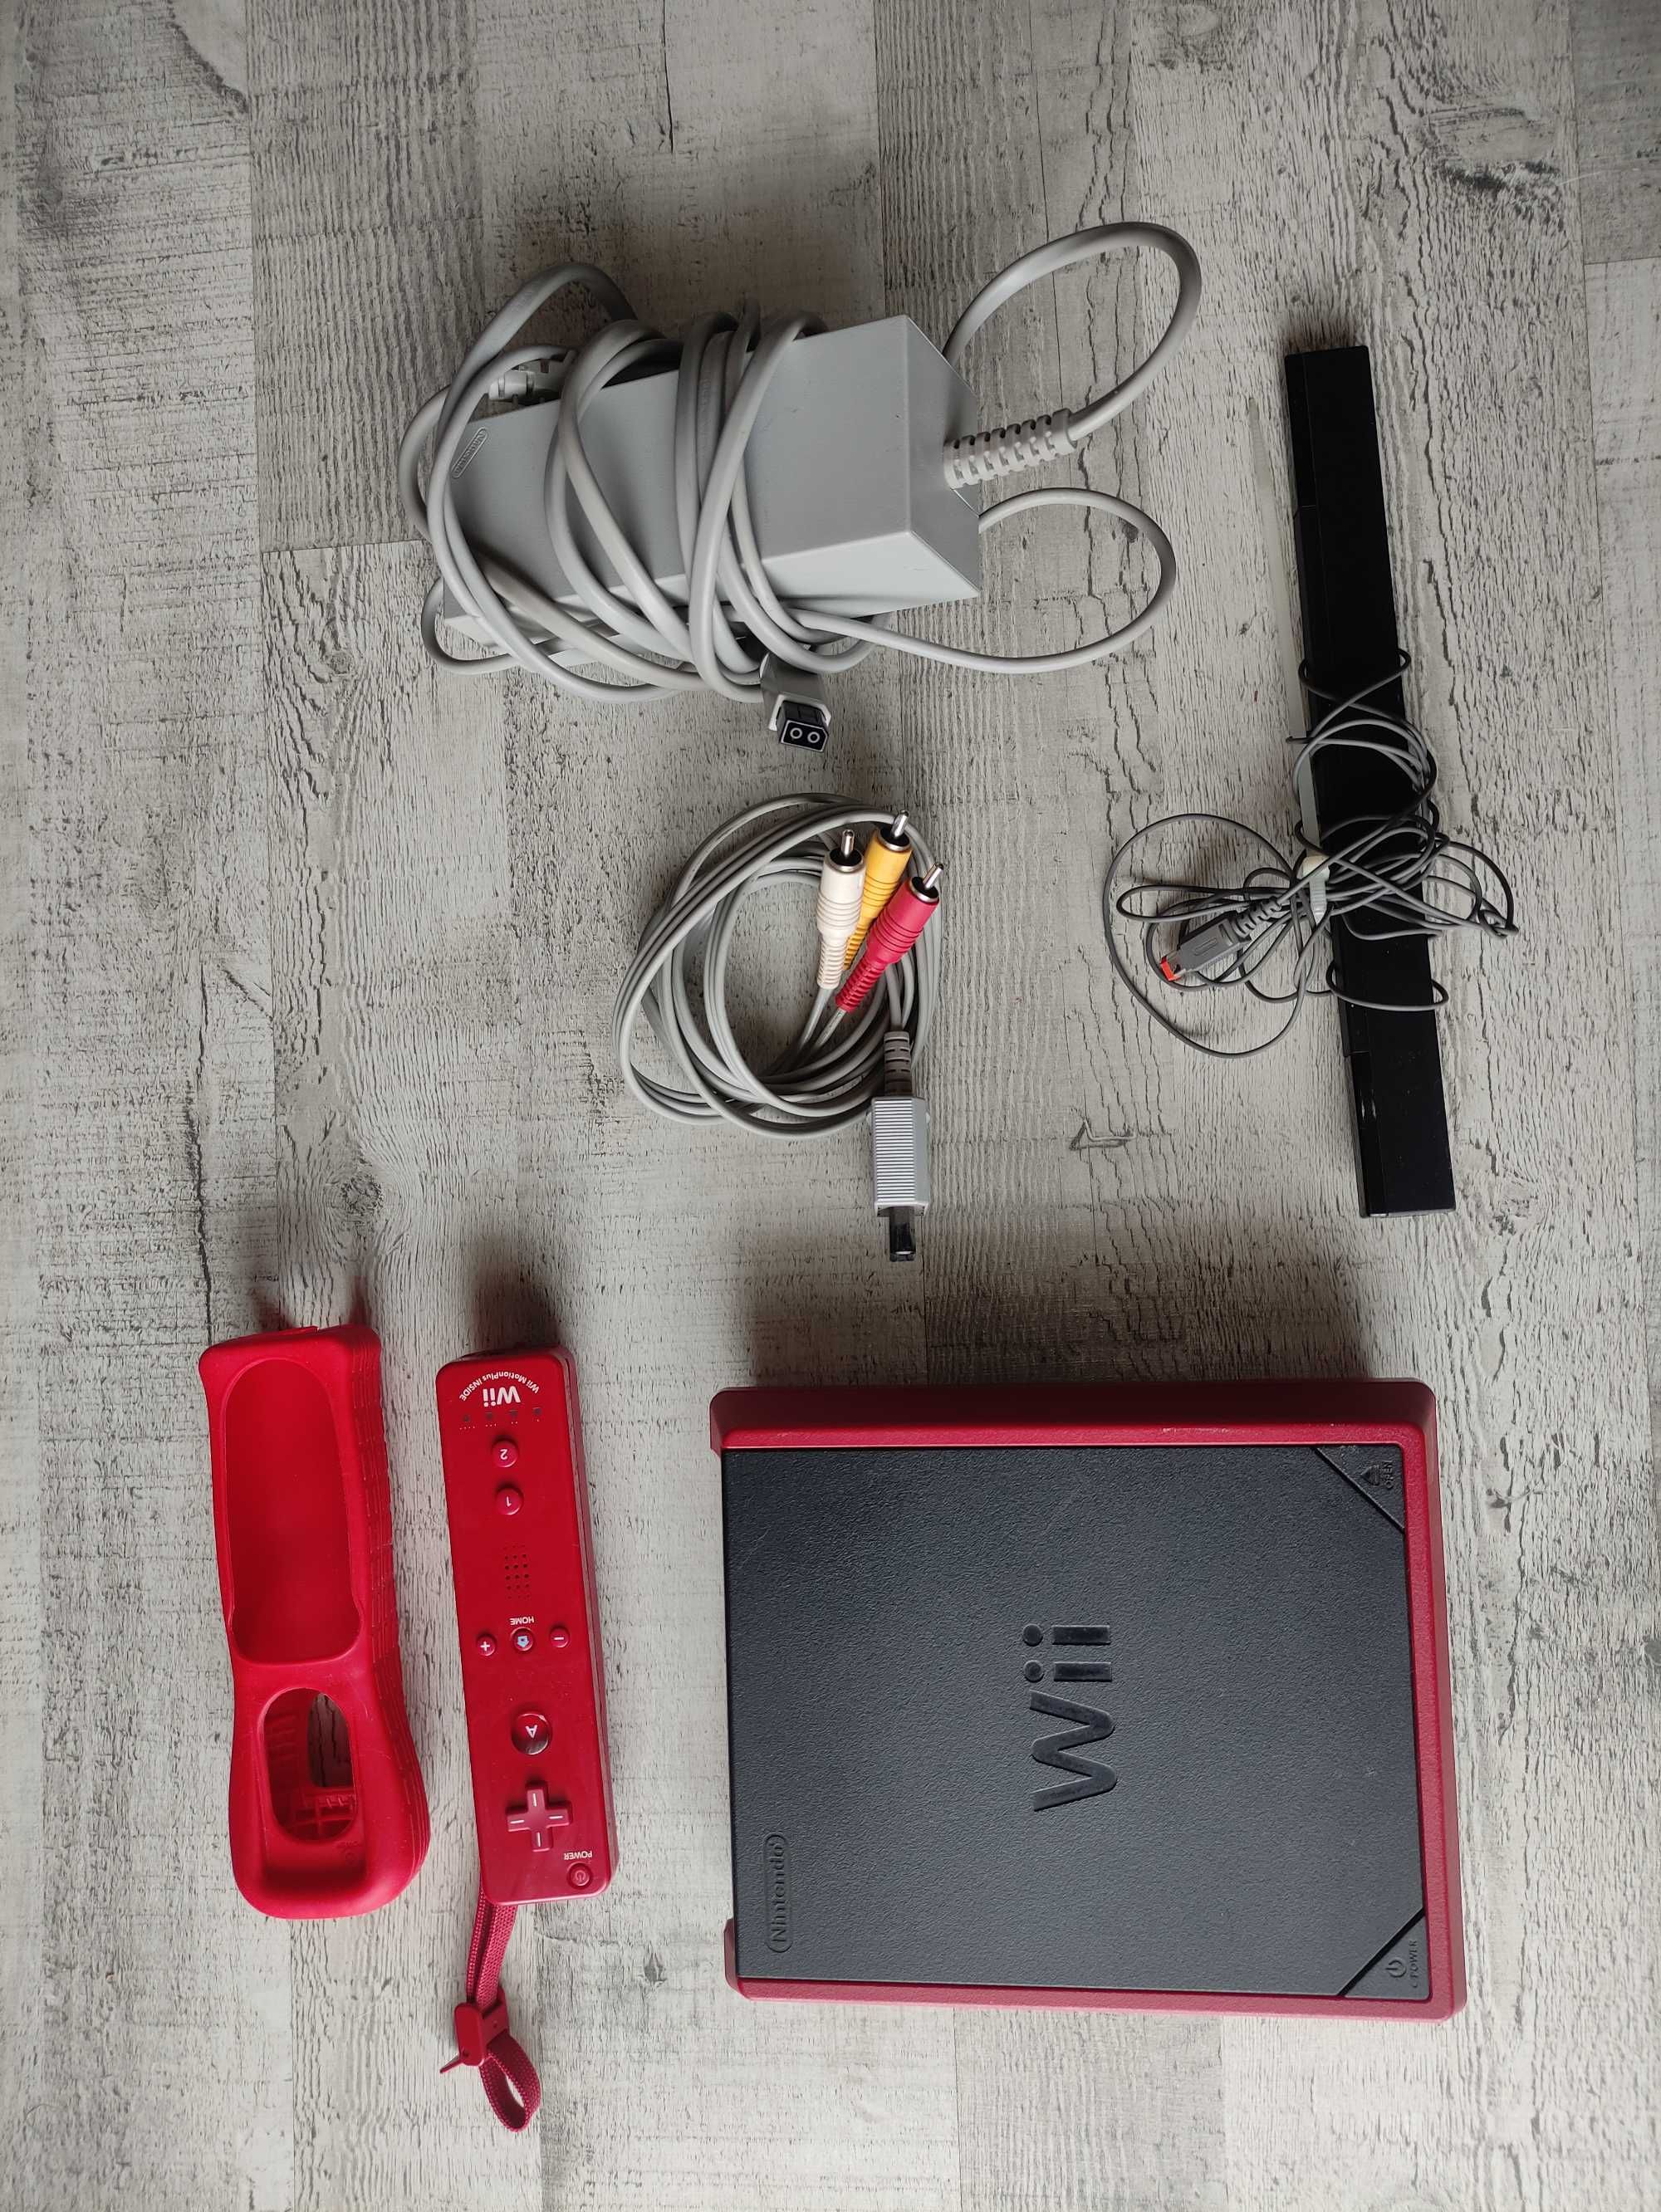 Nintendo Wii mini vermelha edição especial em caixa